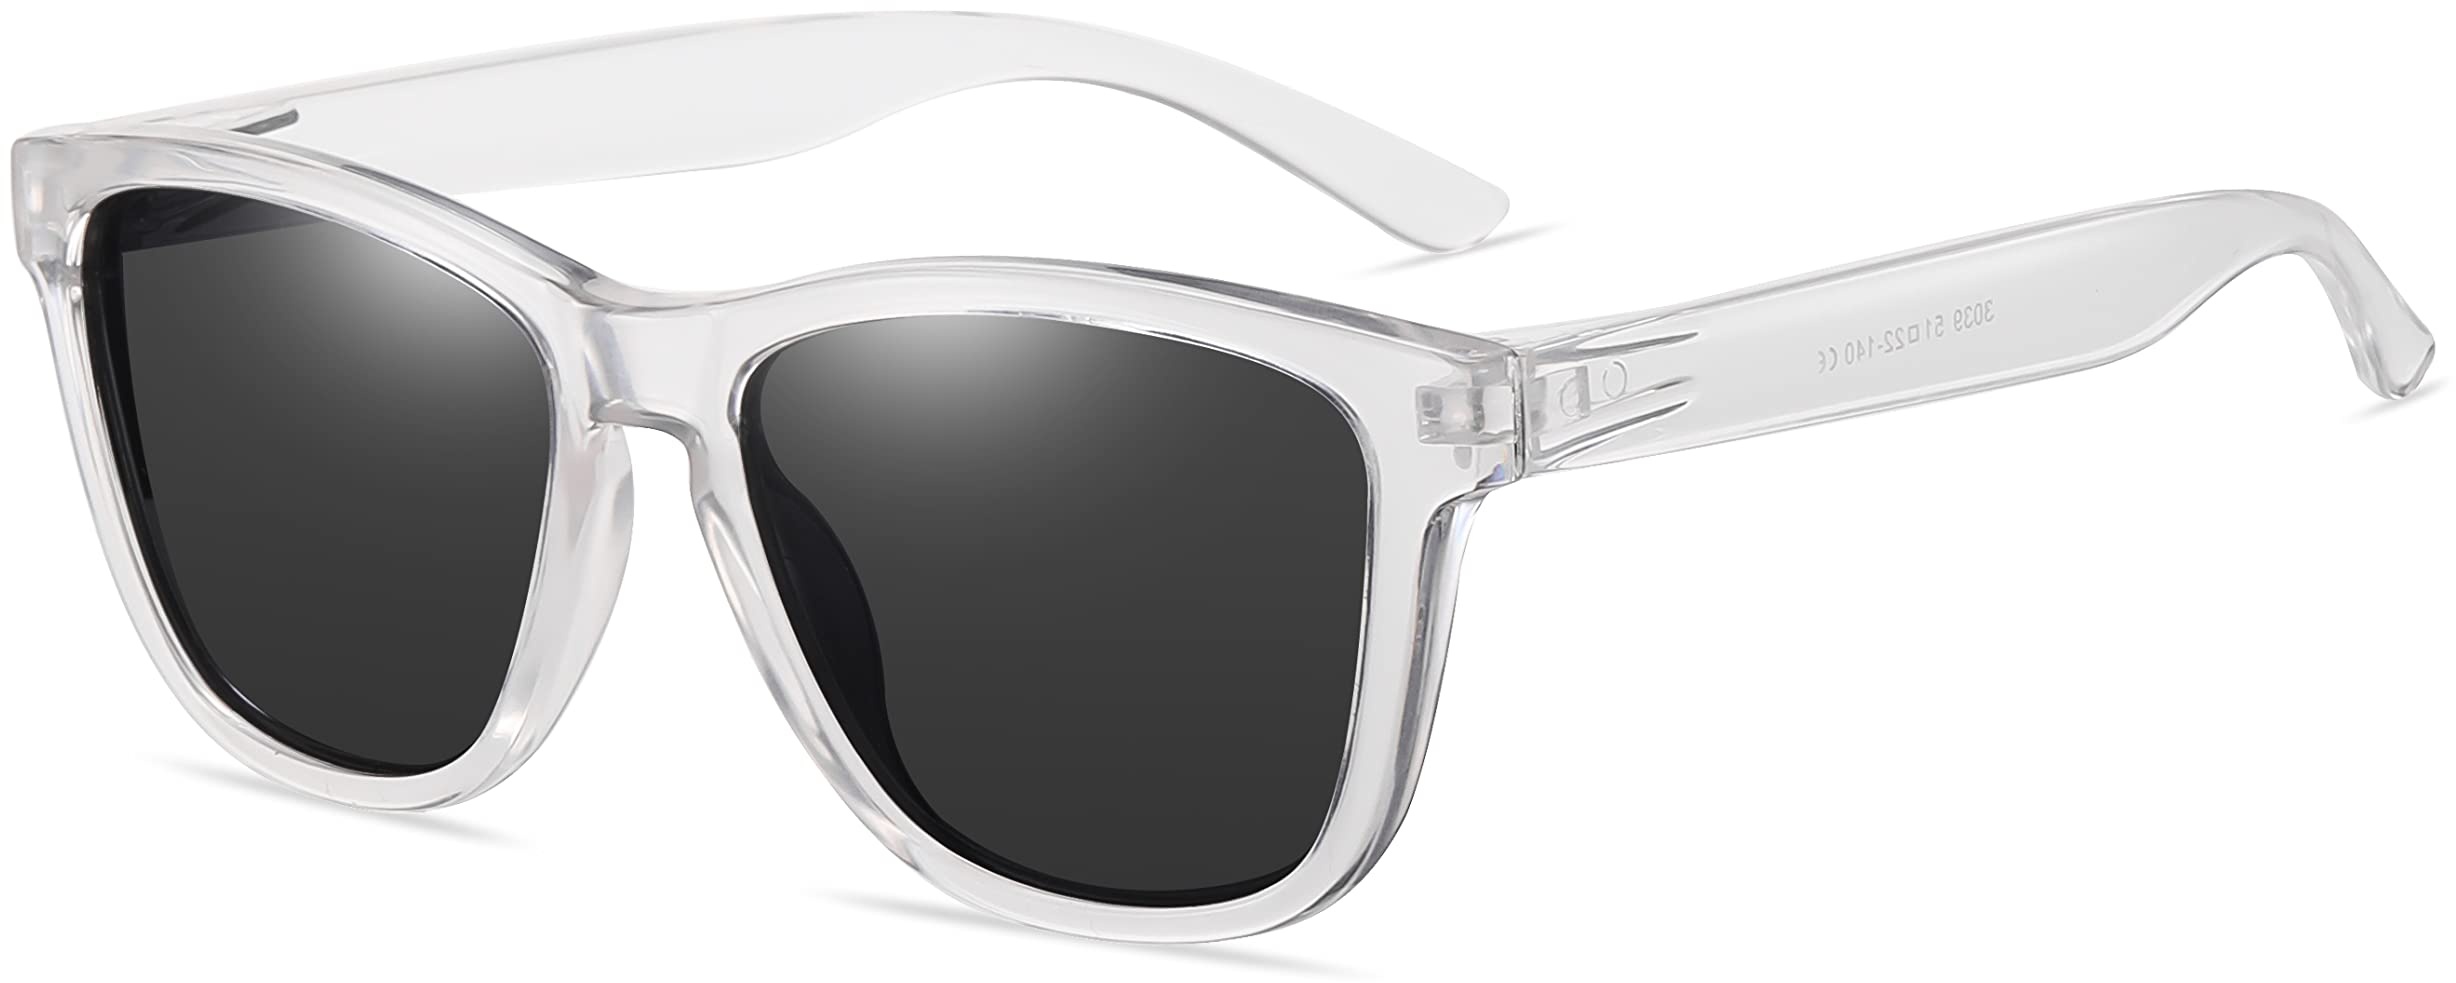 AMEXI Sonnenbrille-Herren-Damen-Polarisiert-Rechteckig-Sonnenbrillen Unisex Retro Klassische Vintage Polarisierte Brille UV400 Schutz Classic Sunglasses Eckig für Fahren - L